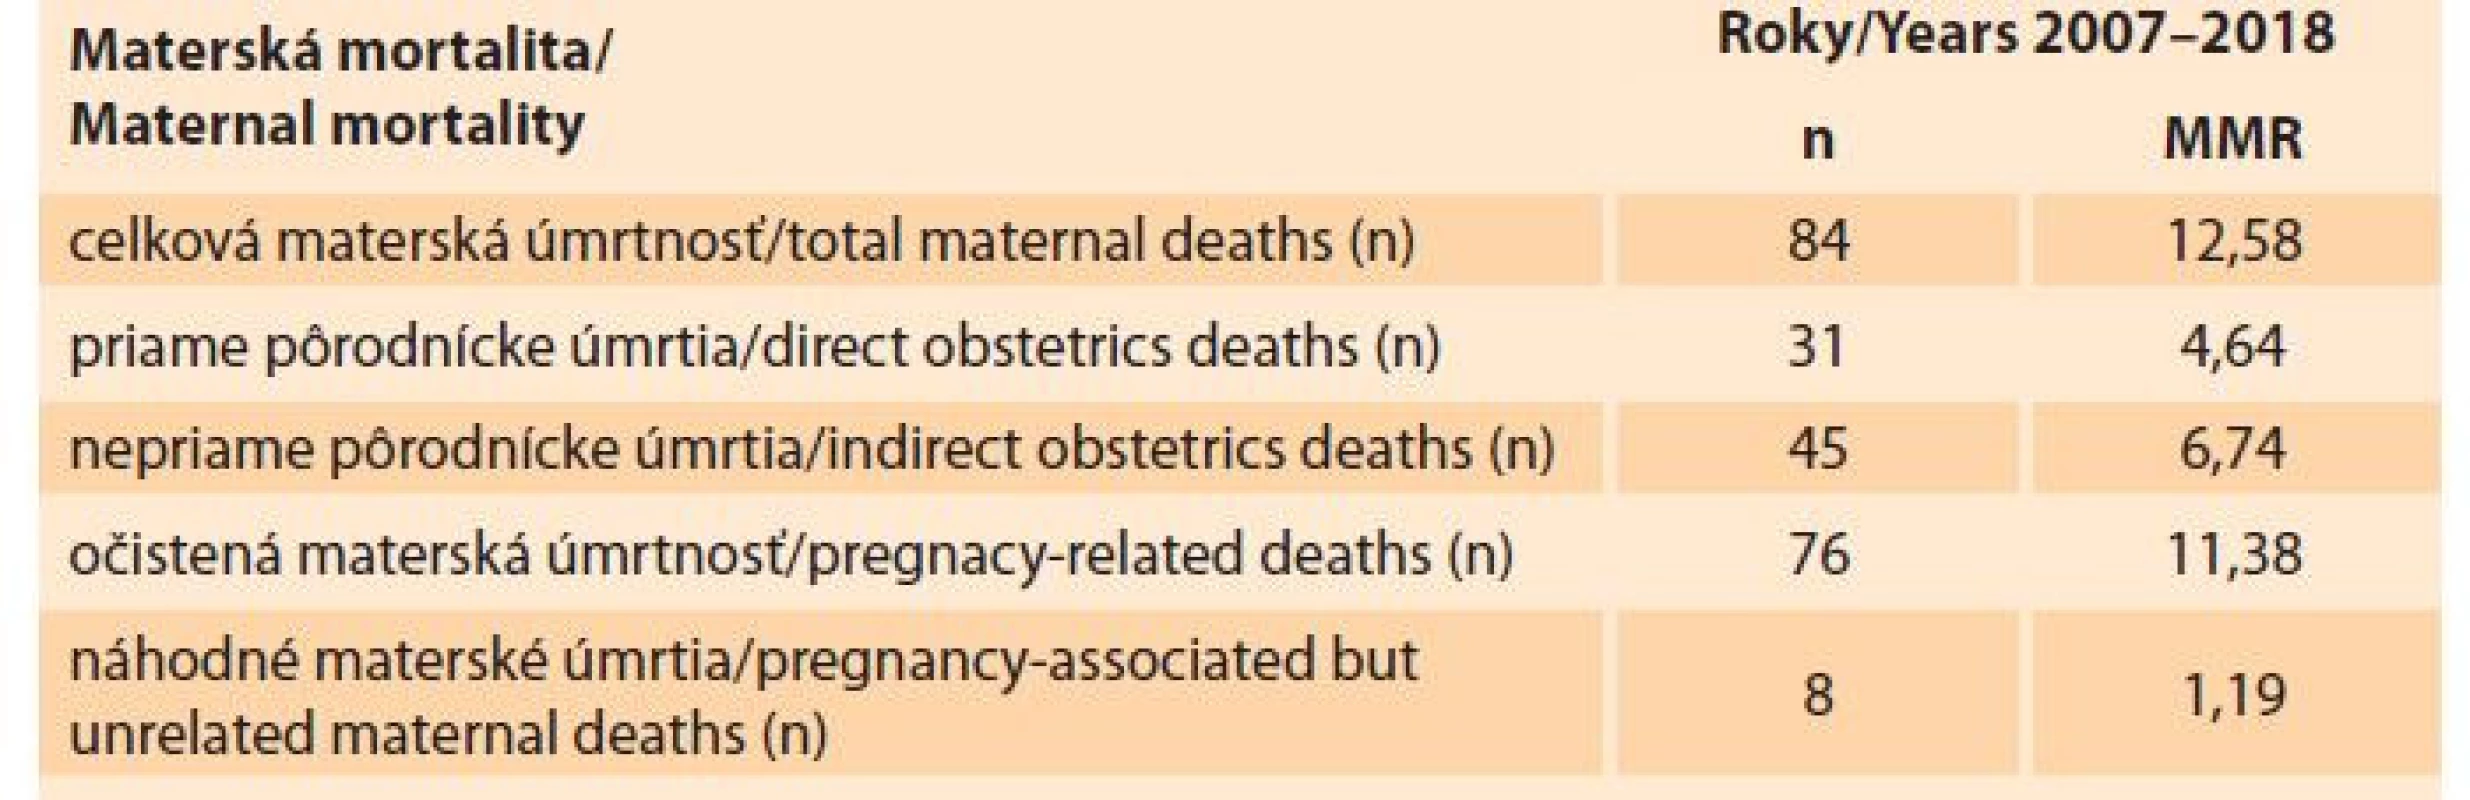 Materská mortalita na Slovensku v rokoch 2007–2018 (zdroj: SGPS)<br>
Tab. 1. Maternal mortality in Slovakia in the years 2007–2018 (source: SGPS).